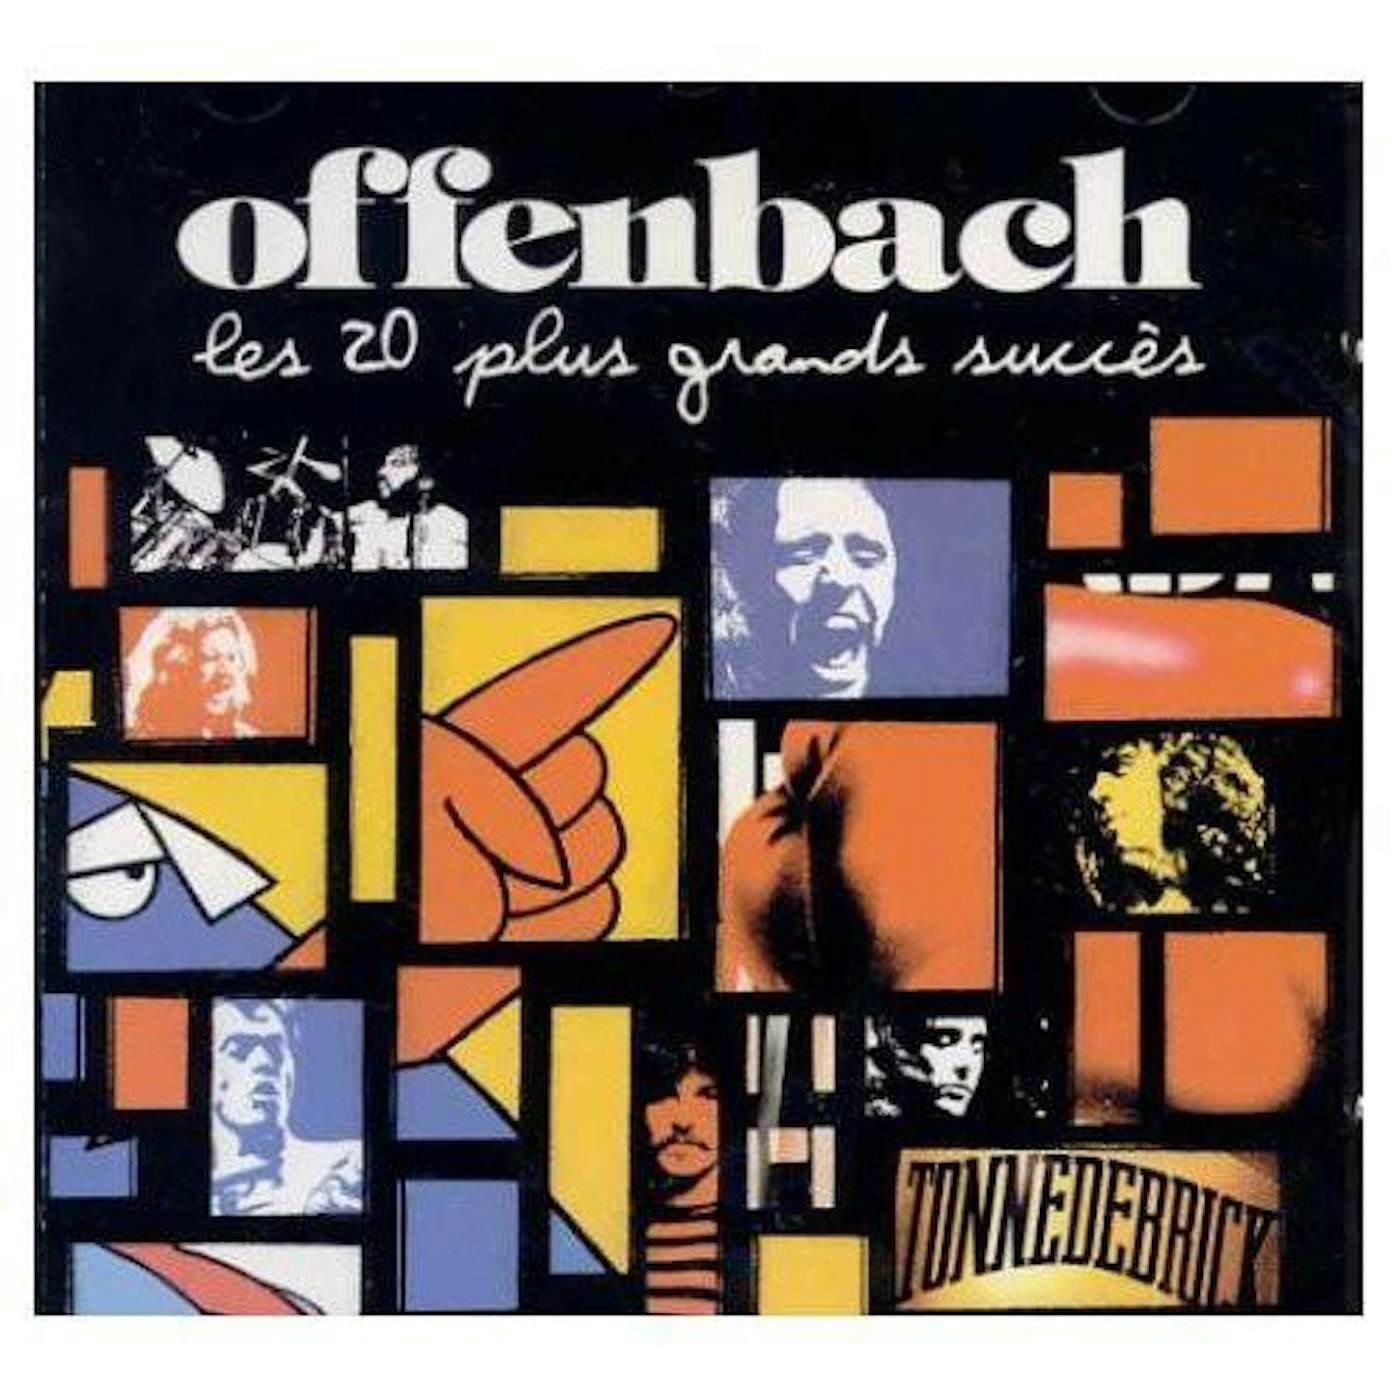 Offenbach LES 20 PLUS GRANDS SUCCES CD